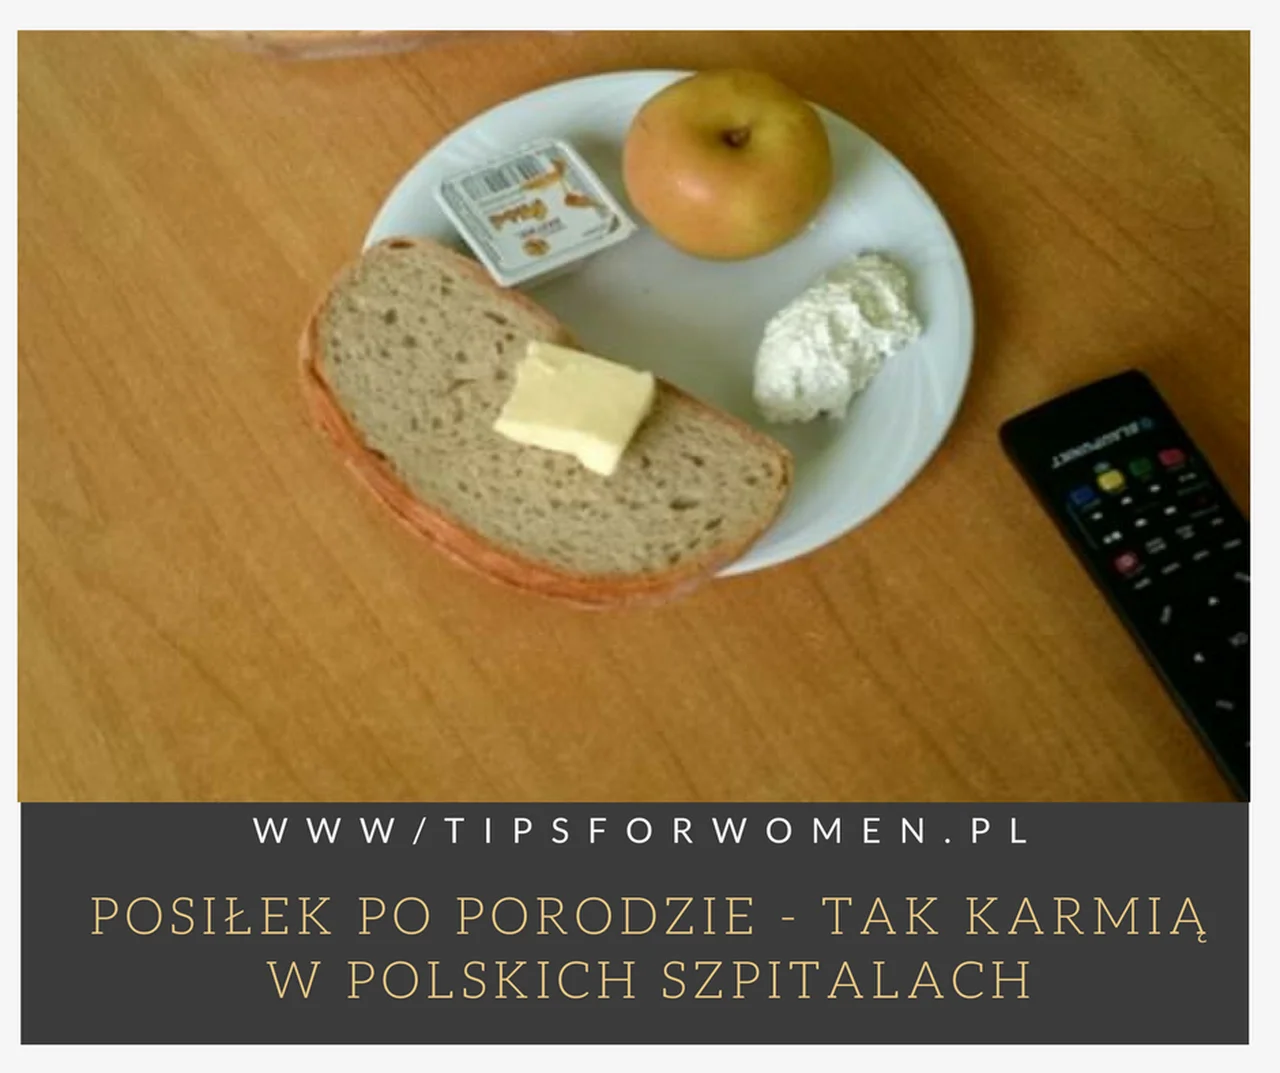 Jak karmią kobiety po pordzie w Polsce?